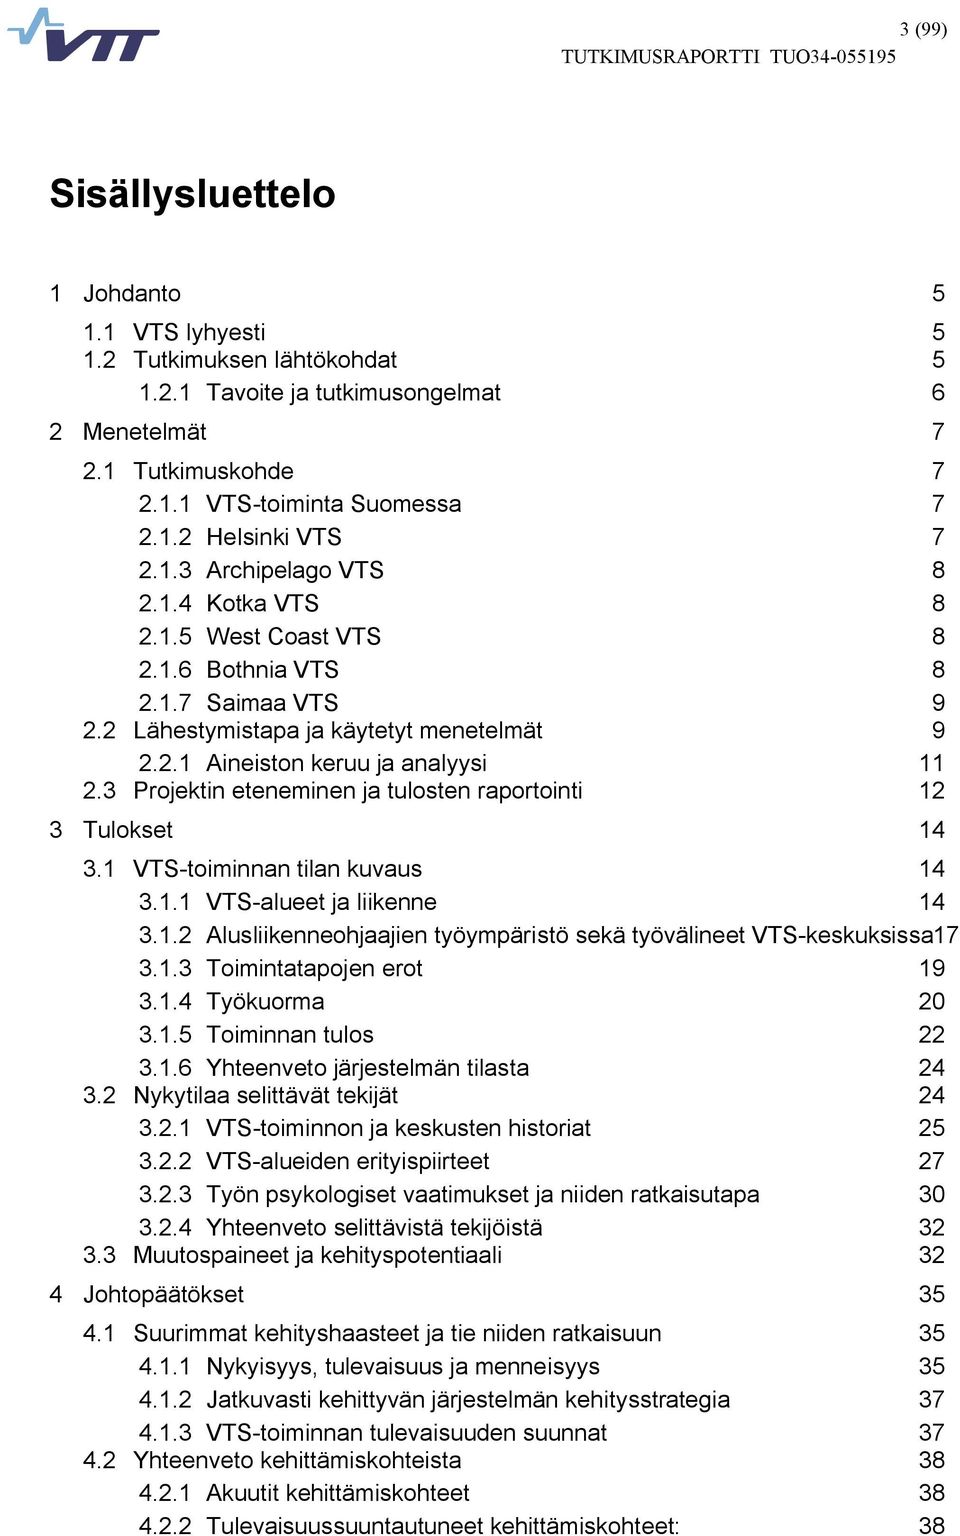 3 Projektin eteneminen ja tulosten raportointi 12 3 Tulokset 14 3.1 VTS toiminnan tilan kuvaus 14 3.1.1 VTS alueet ja liikenne 14 3.1.2 Alusliikenneohjaajien työympäristö sekä työvälineet VTS keskuksissa17 3.